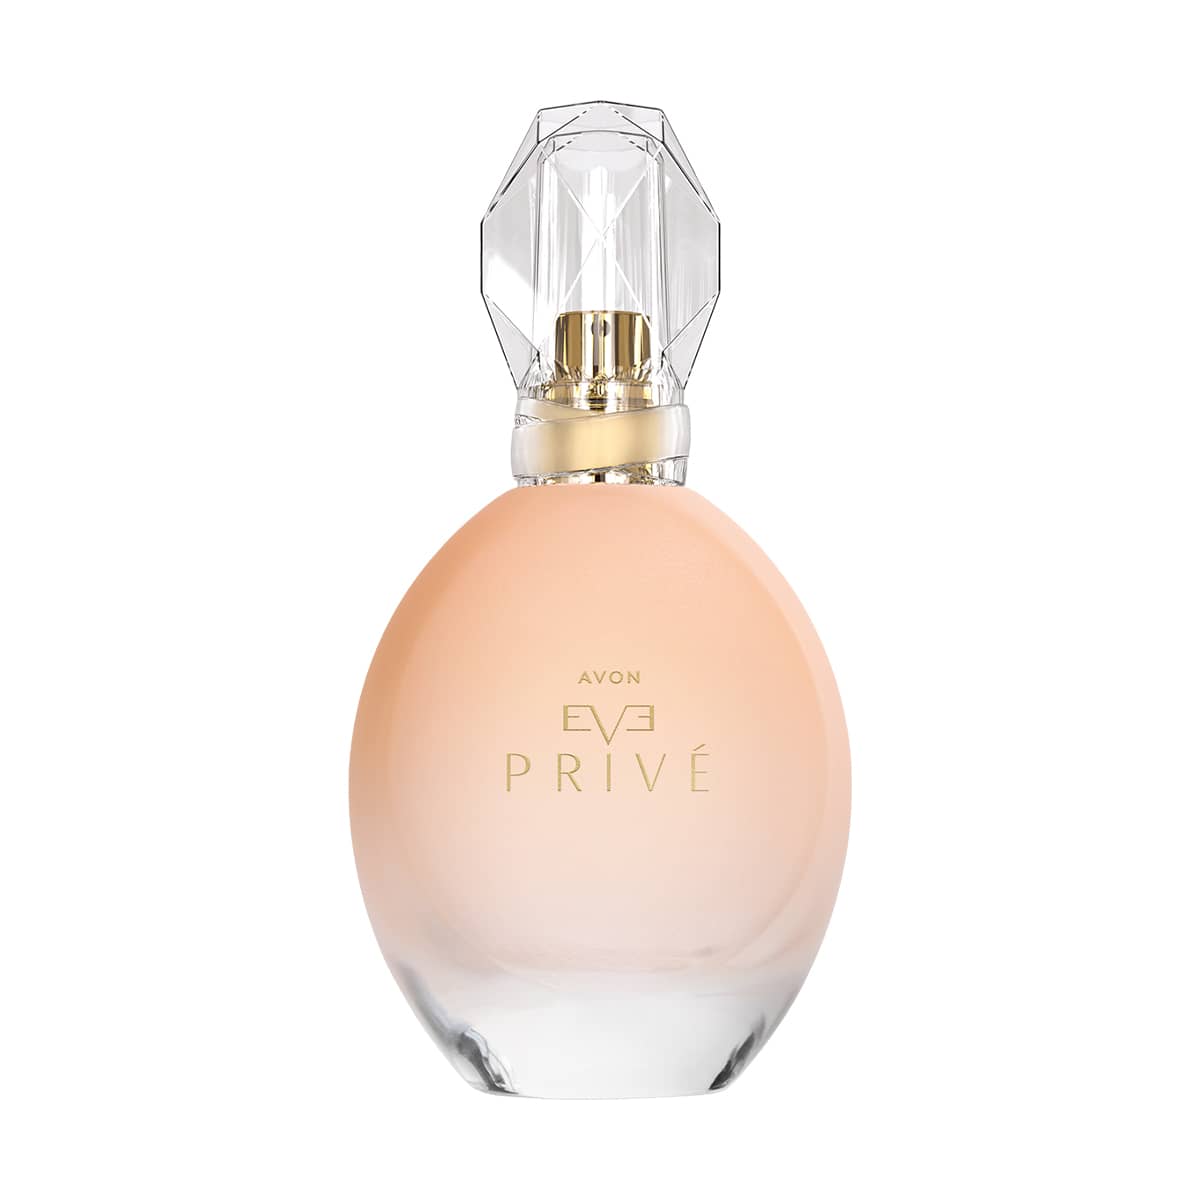 Eve Privé Eau de Parfüm 50ml